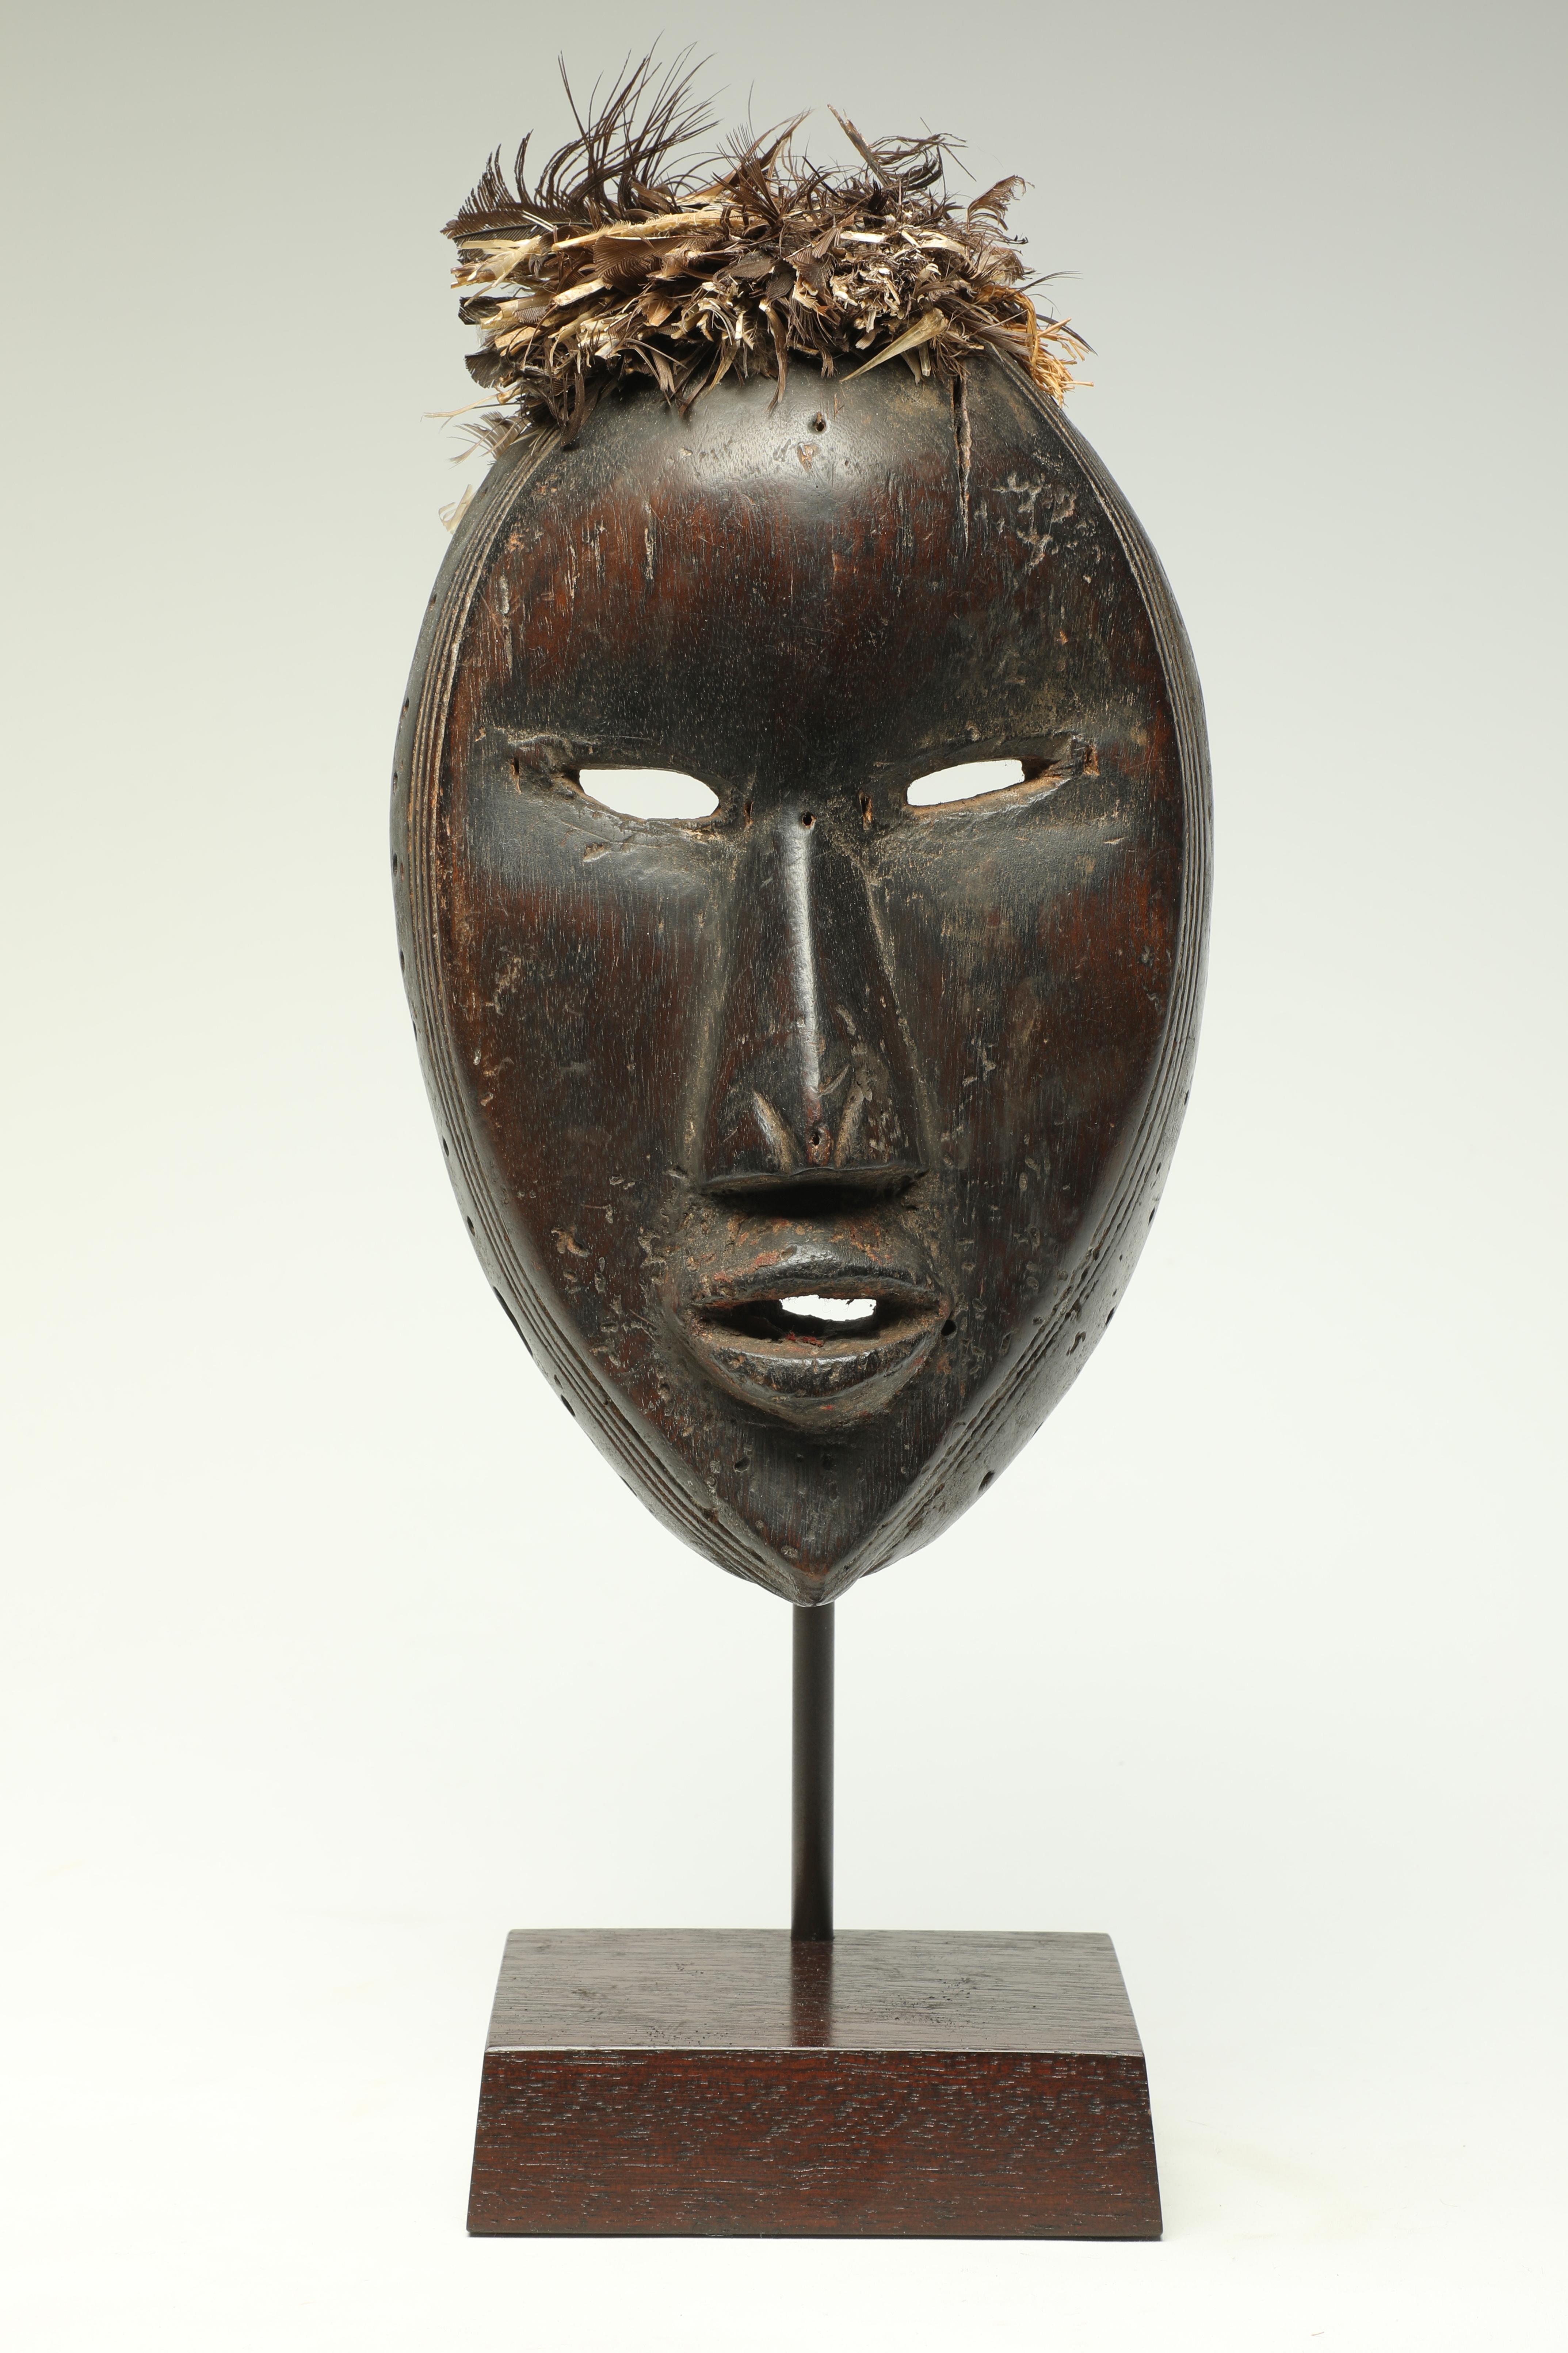 Ausdrucksstarke frühklassische kubistische Dan-Maske mit raffiniertem, expressivem Aussehen, schmalen, offenen Augen und Mund und feinen Ritzspuren an der Außenseite des Gesichts. Anfang des 20. Jahrhunderts vom Dan-Volk in Liberia und der